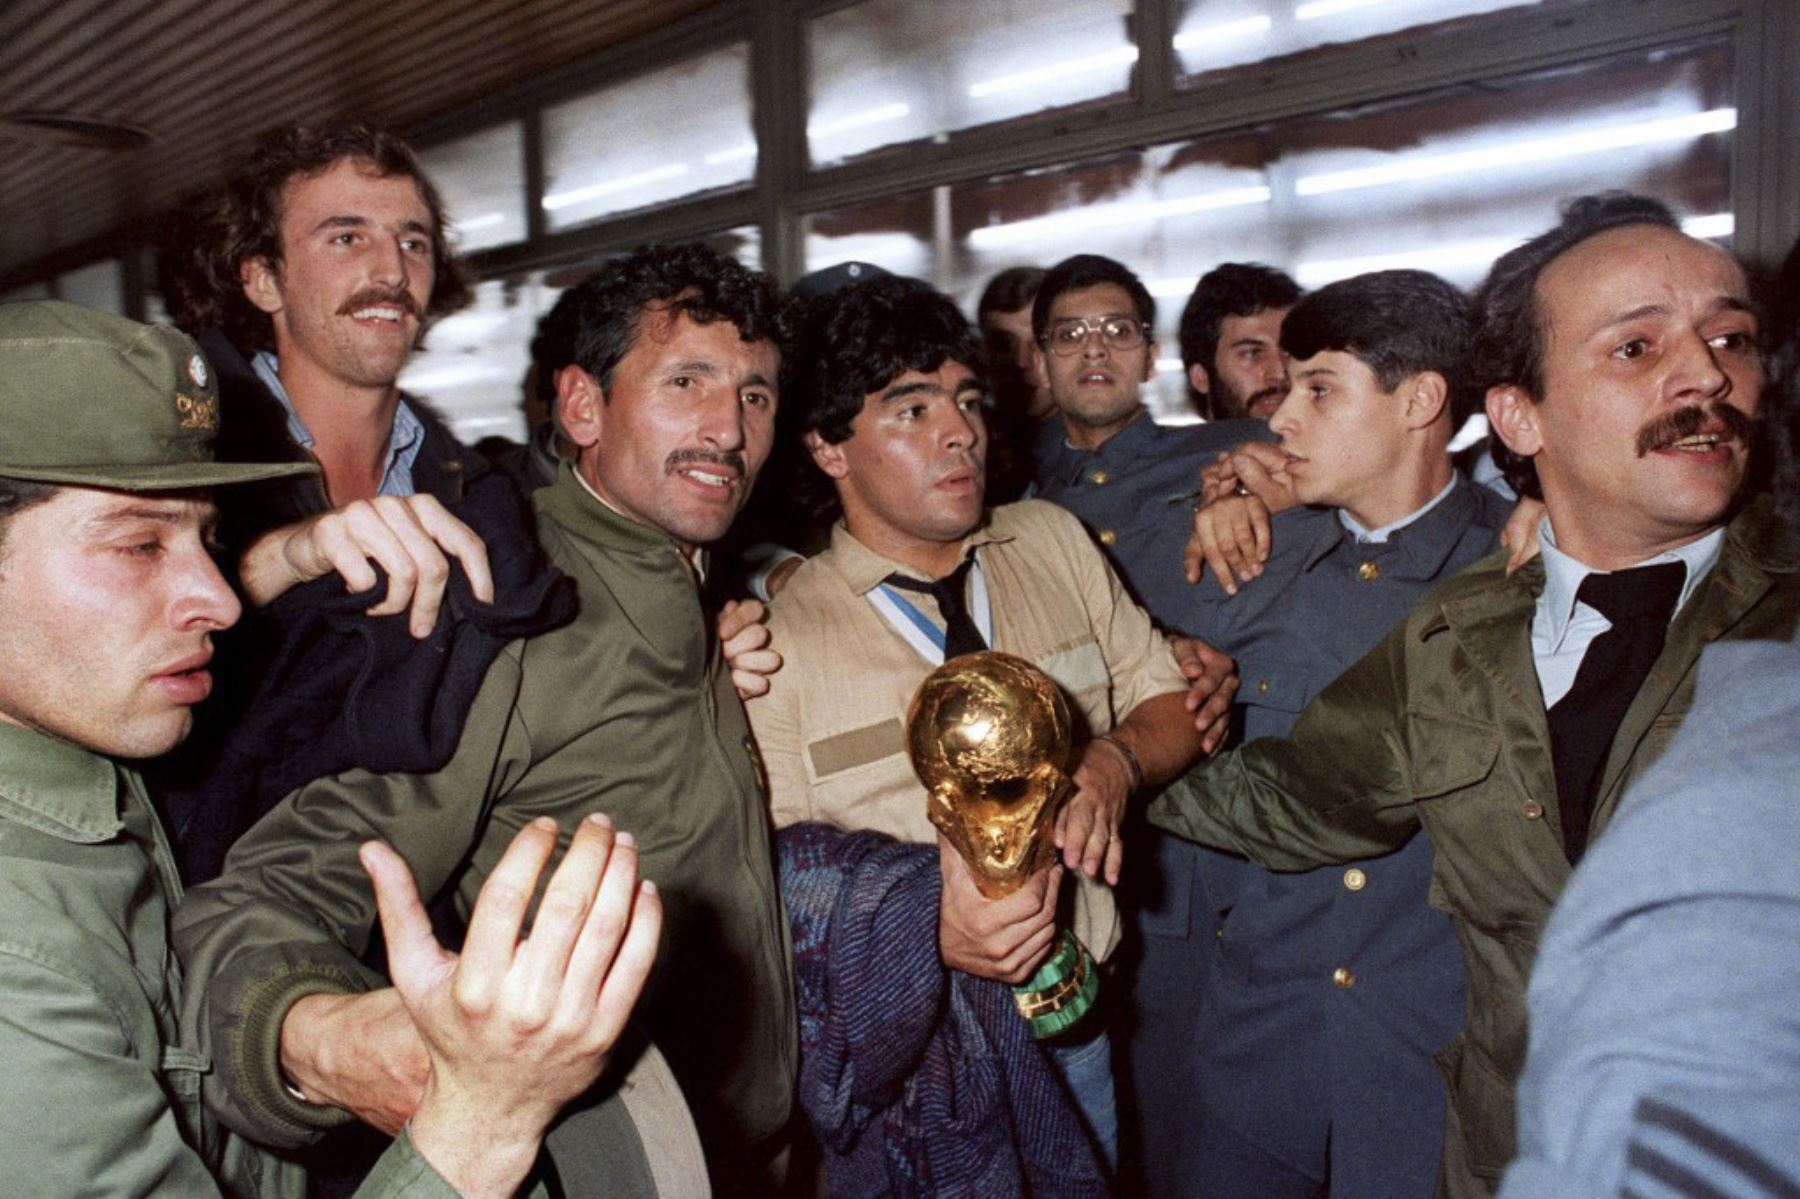 Diego Maradona, ganador de la Copa Mundial de la FIFA en 1986 en México, la copa en sus brazos, rodeado de simpatizantes y agentes de seguridad, llegó el 30 de junio de 1986 al aeropuerto de Buenos Aires procedente de México. Foto: AFP